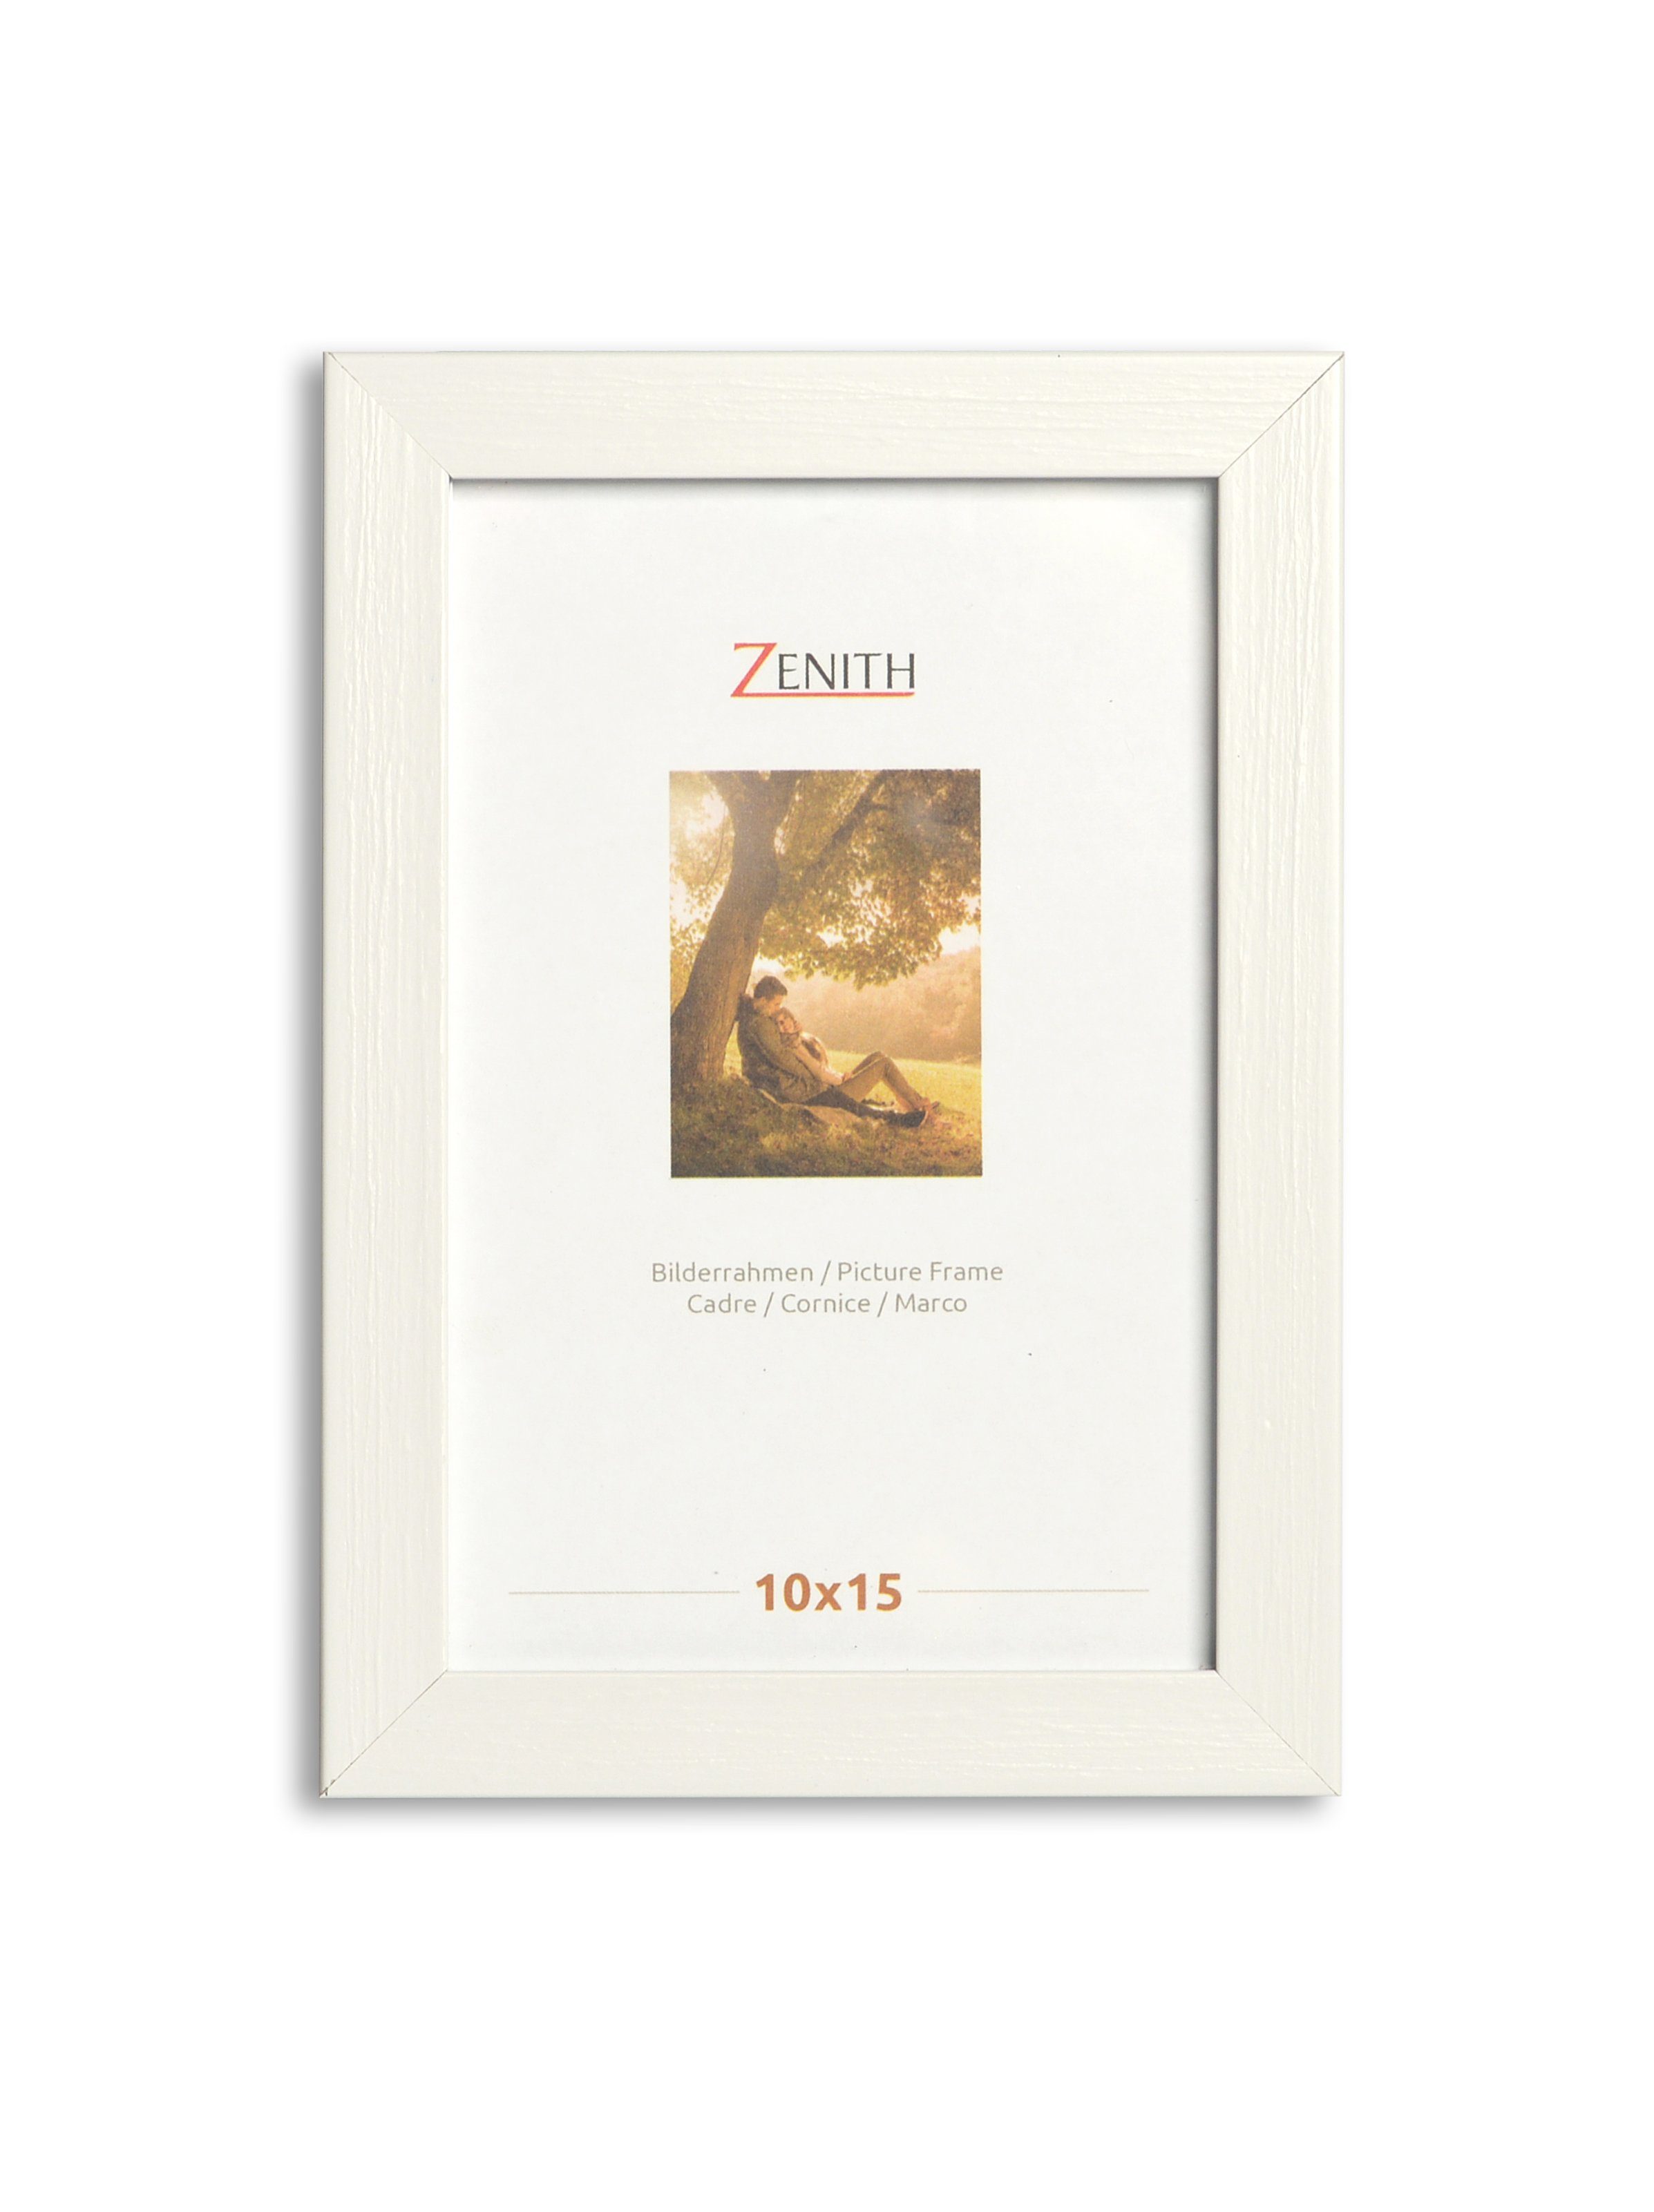 10x15 in 1 cm, für und Bilder, tiefe Victor weiss, (Zenith) moderne Weiß Posterrahmen Bilderrahmen Leiste, Schlemmer,